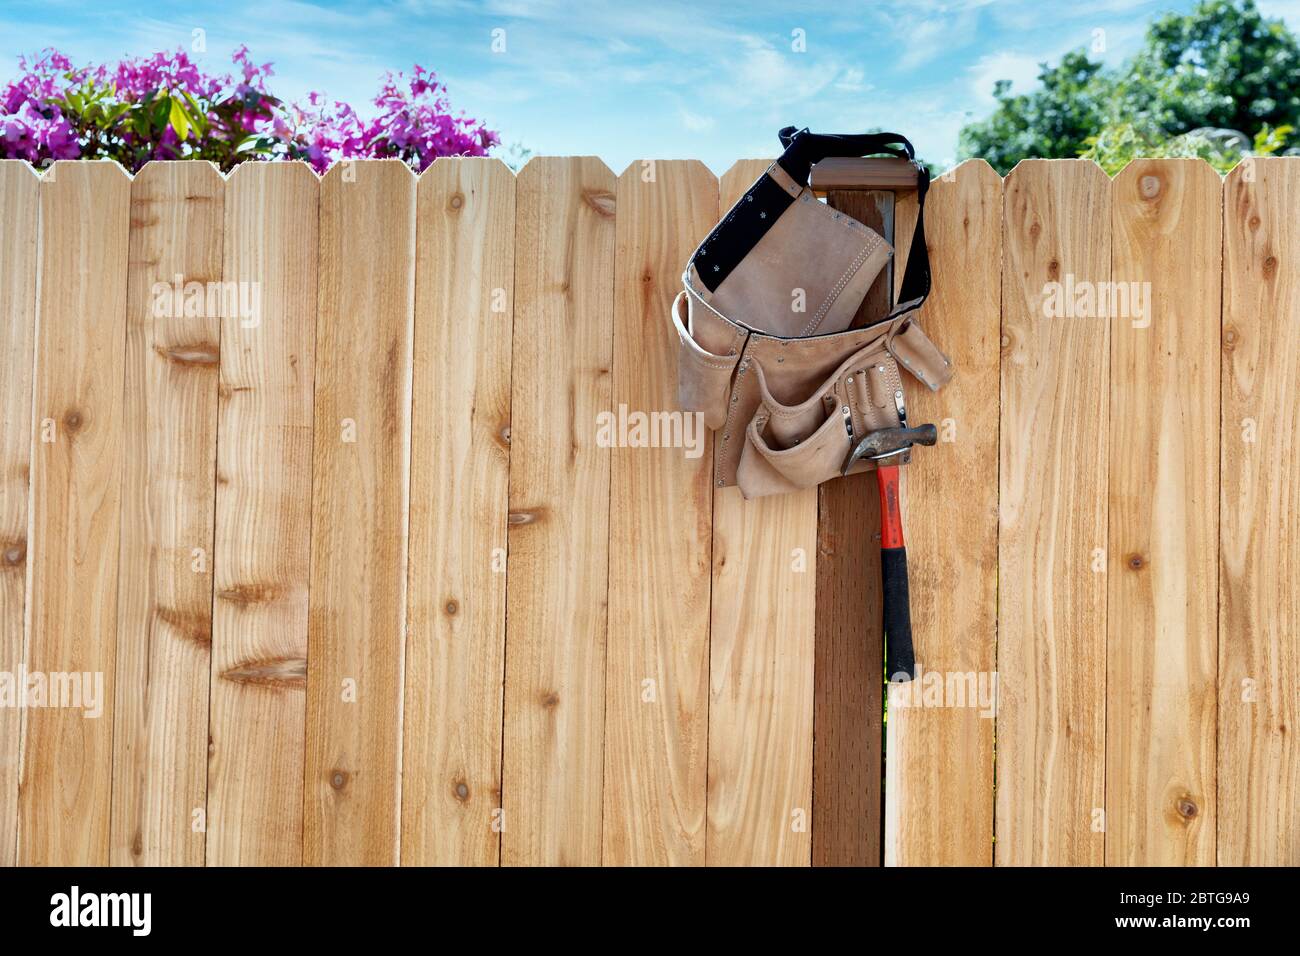 Nuova recinzione in legno con cintura portautensili e tasca appesa al palo Foto Stock